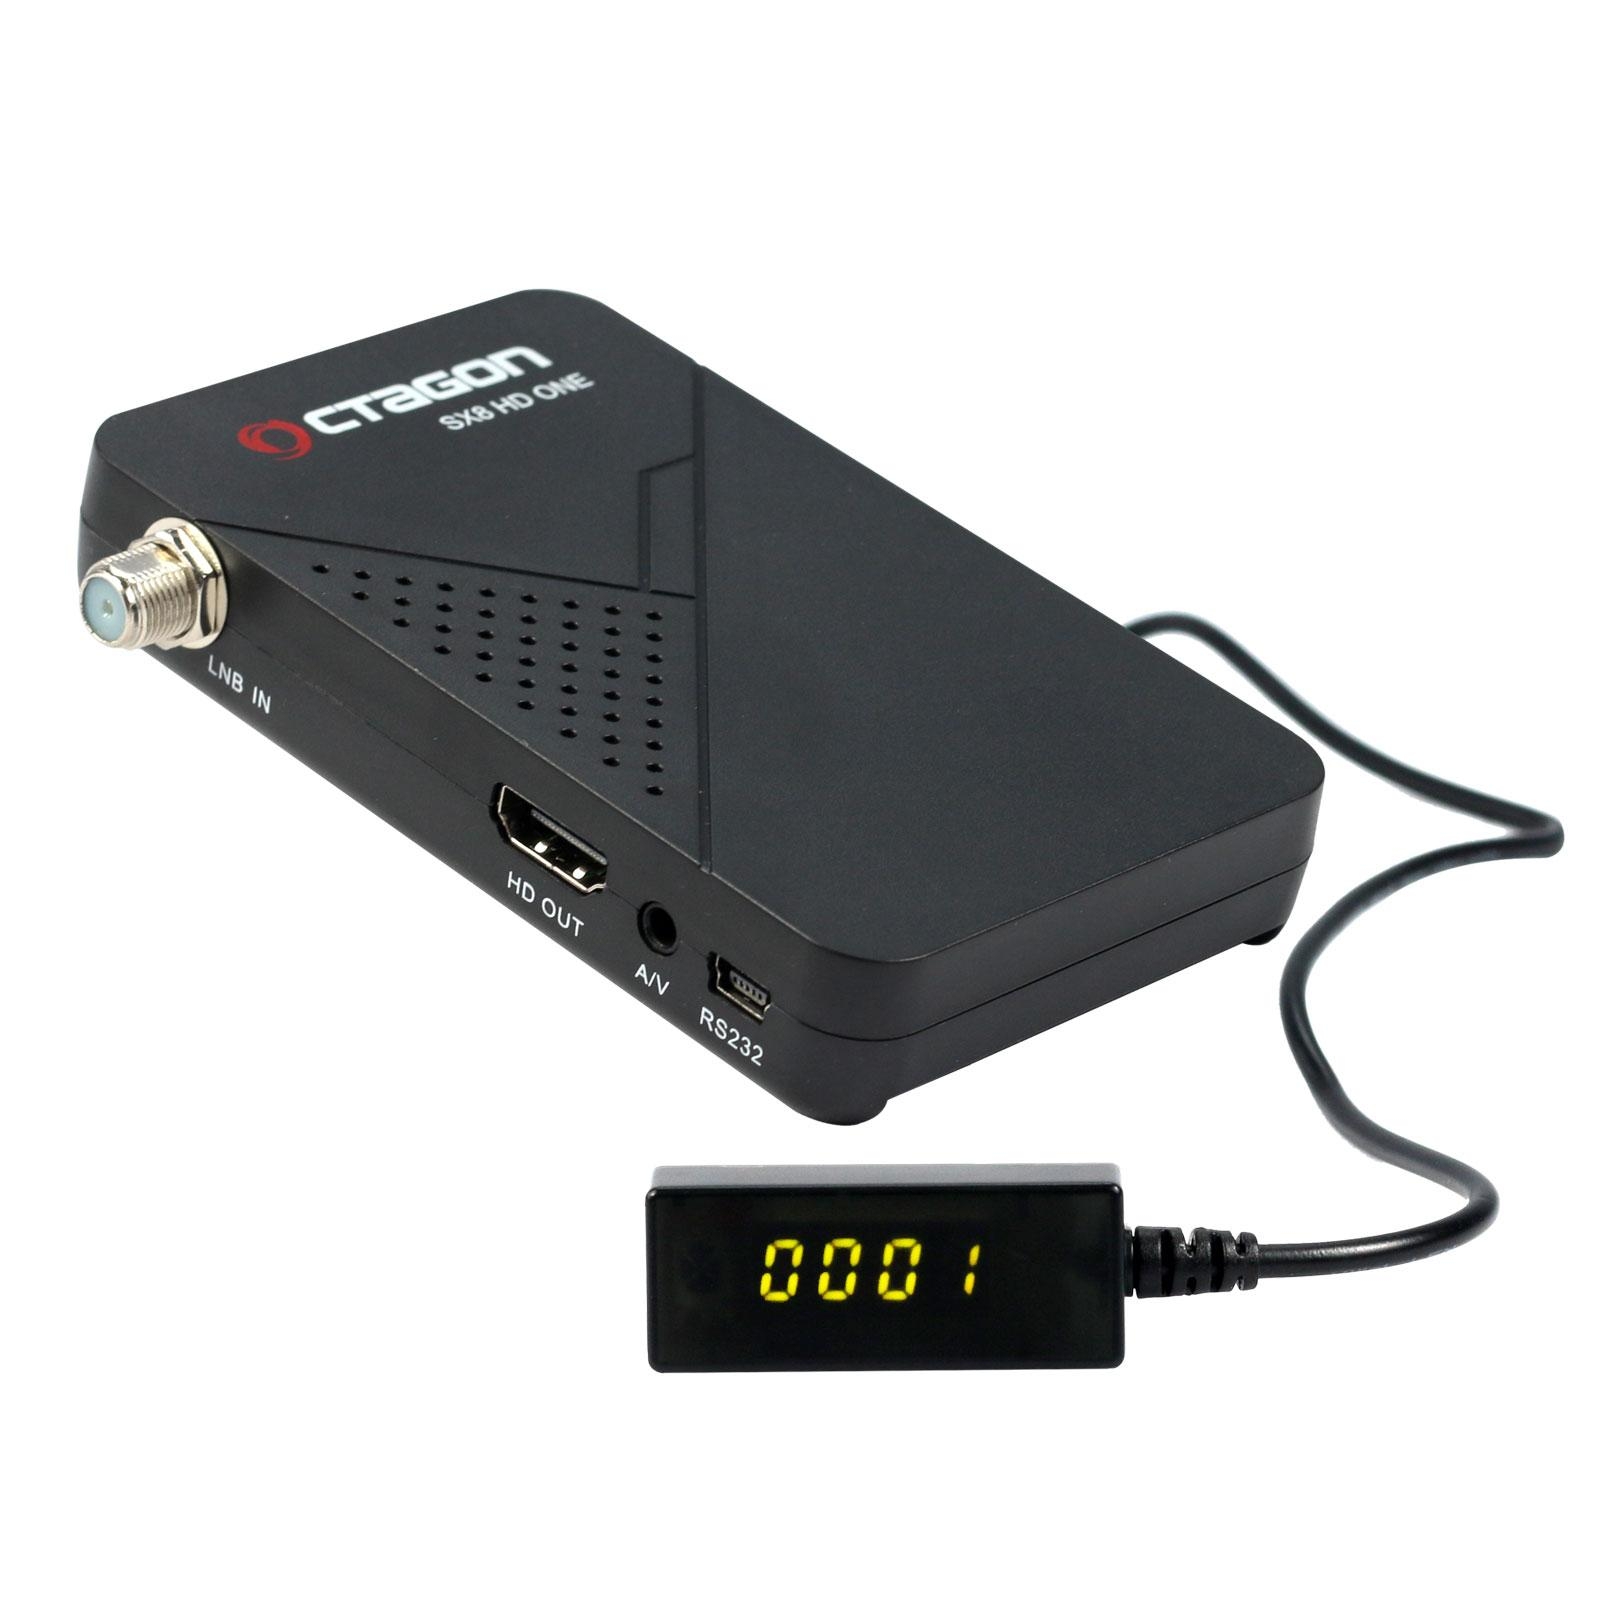 Octagon SX8 Mini Full HD DVB-S2 Multistream FTA Sat Receiver incl. USB Wlan 150 Mbit mit Antenne